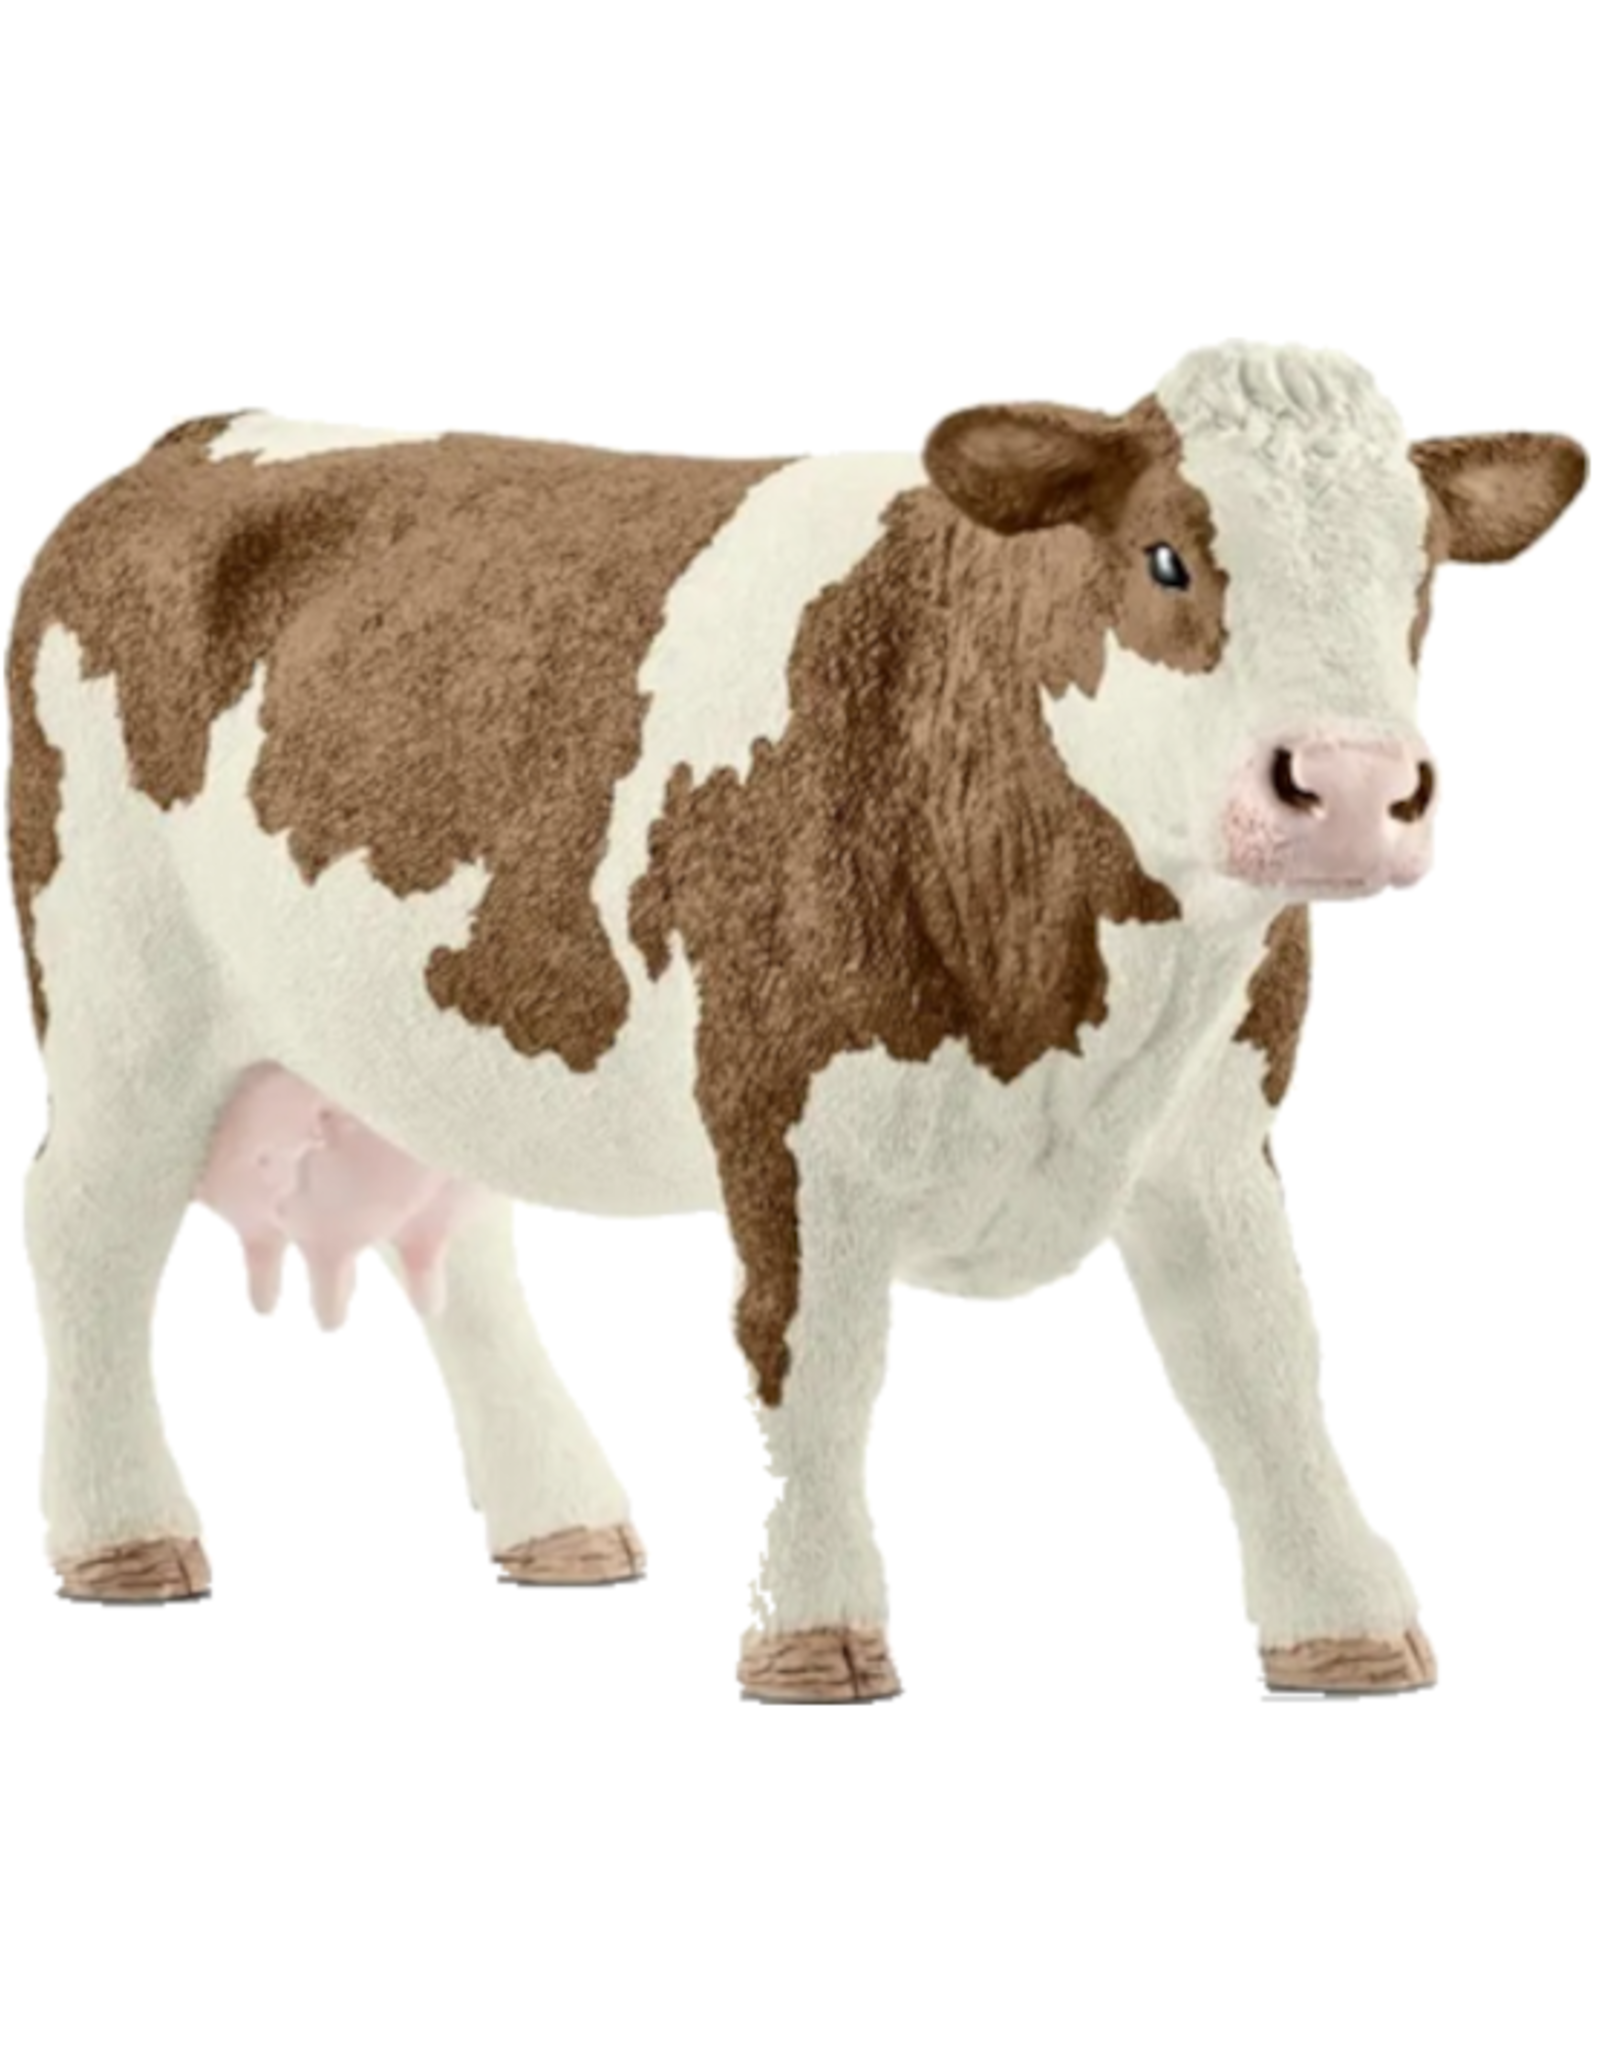 Schleich Schleich - Farm World - 13801 - Simmental Cow